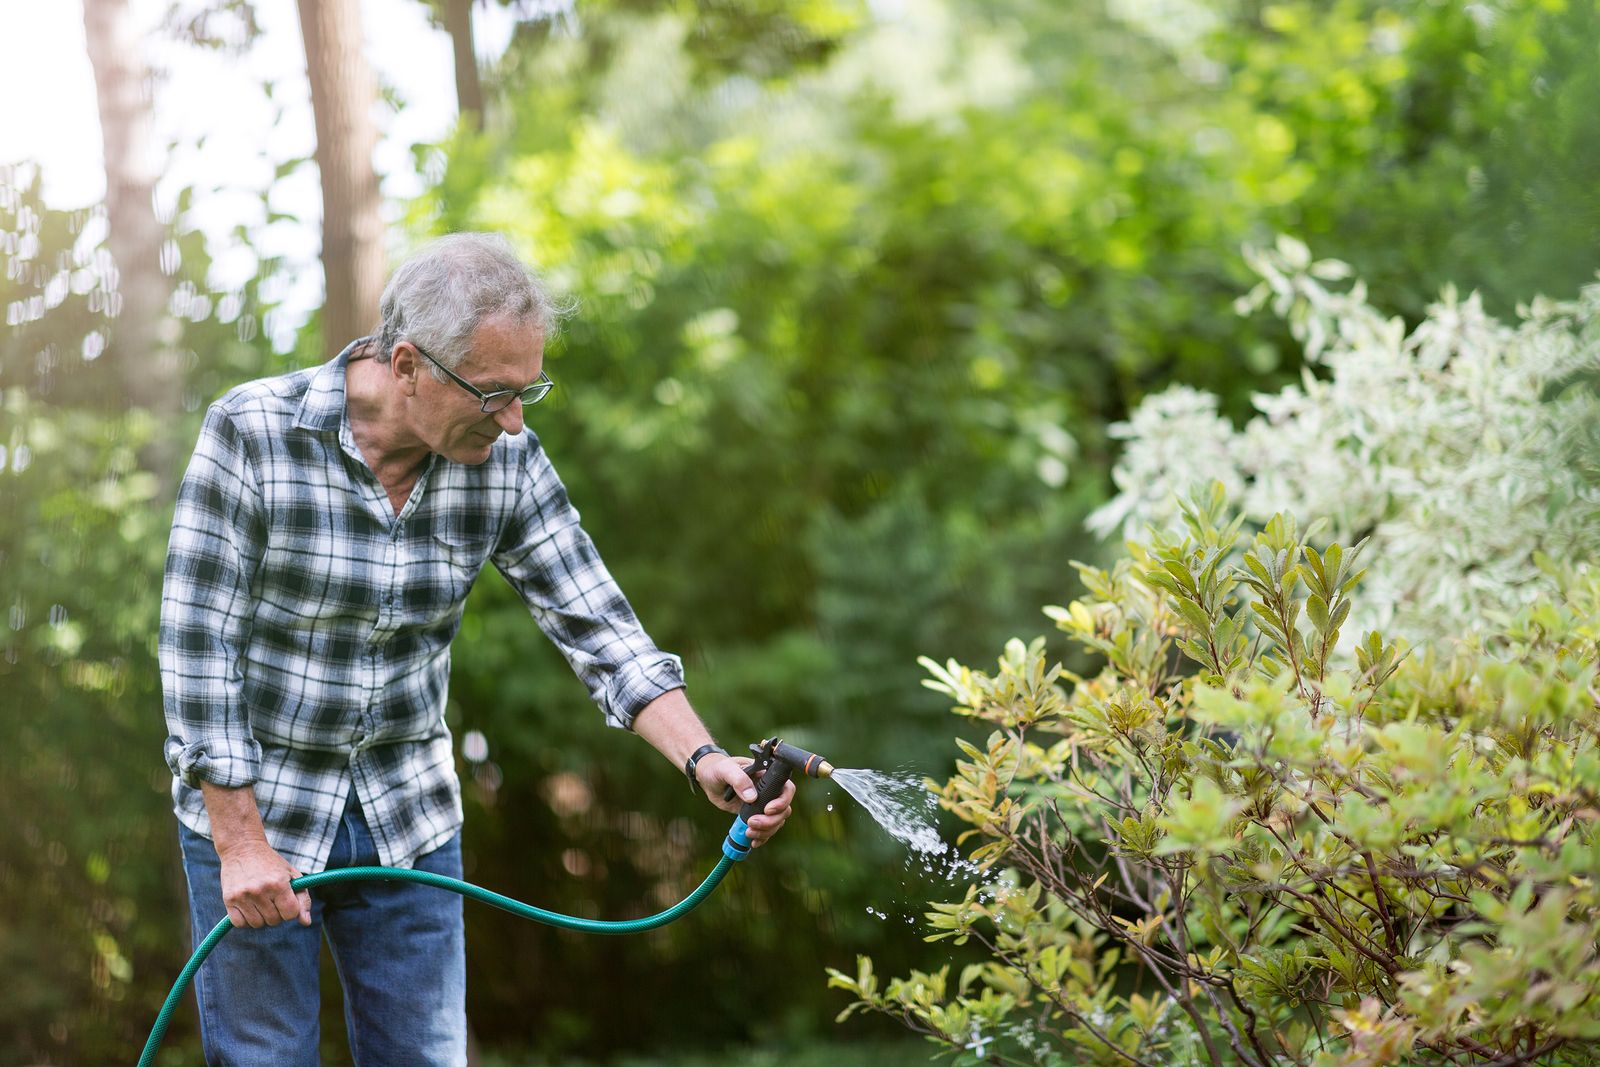 La jardinería: una agradable actividad que es beneficiosa a nivel físico y mental para los mayores